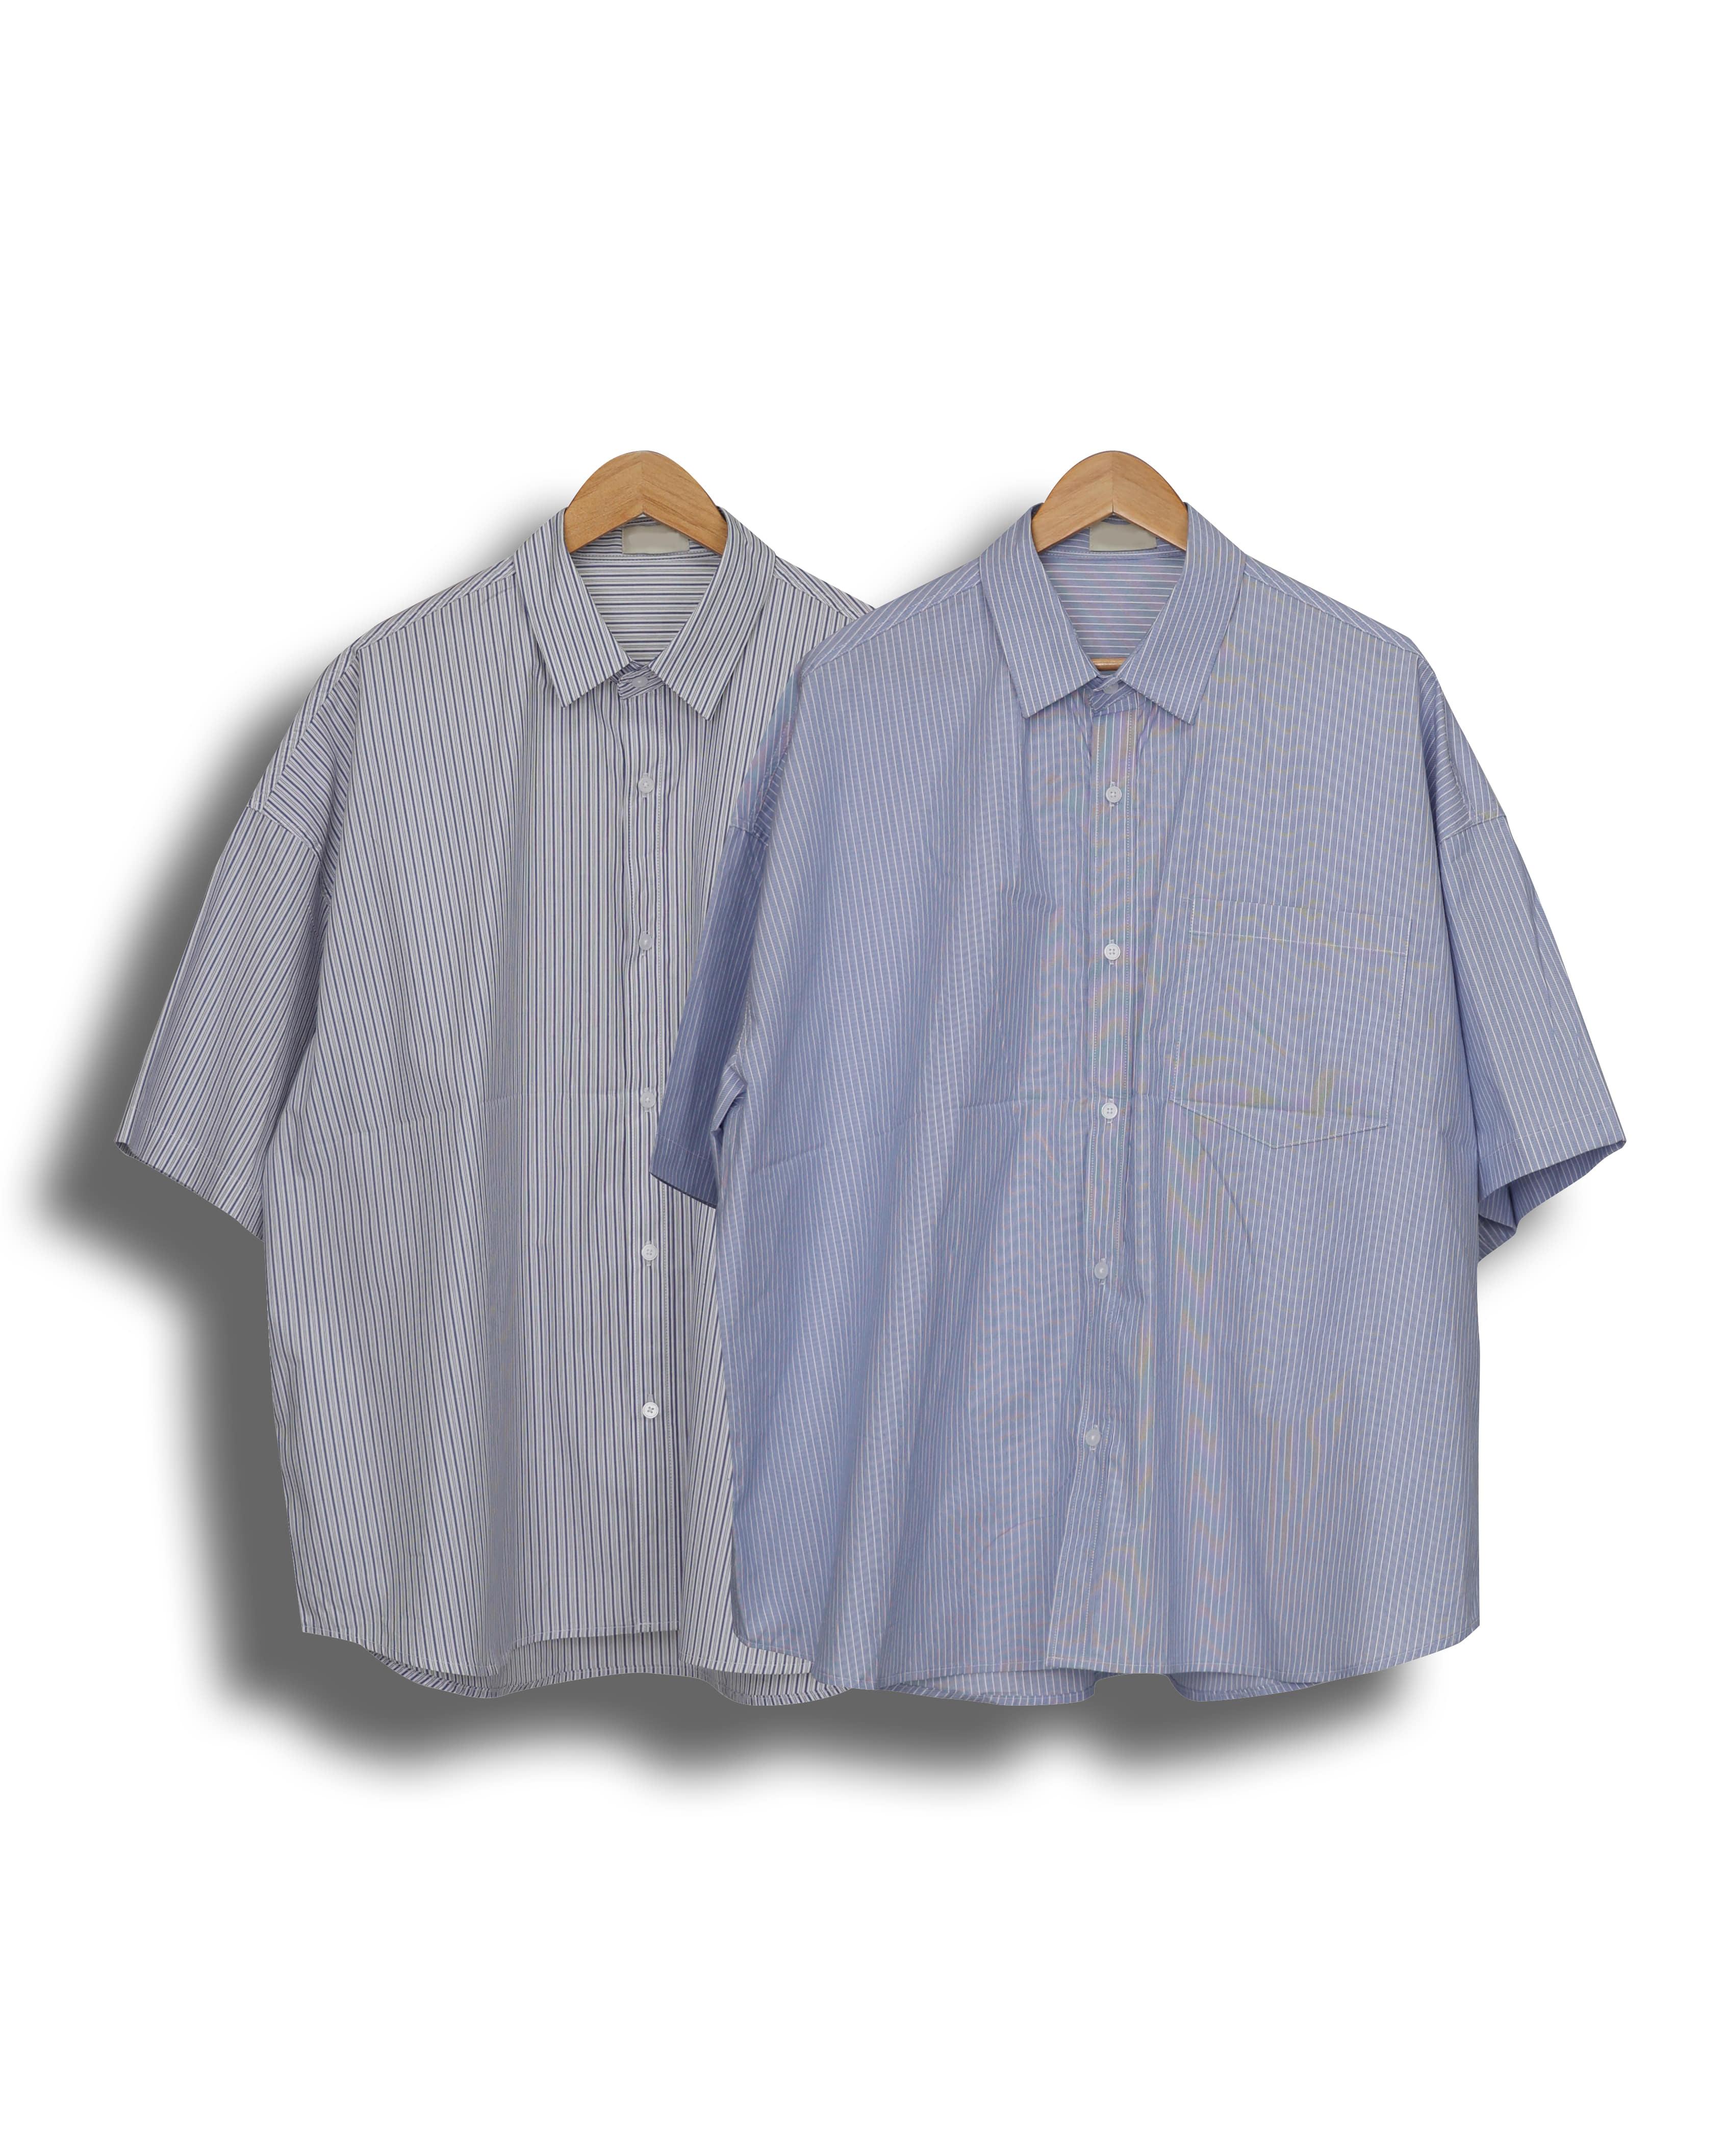 FREAK Rolling Stripe Wide Half Shirts (Sky Blue/White)